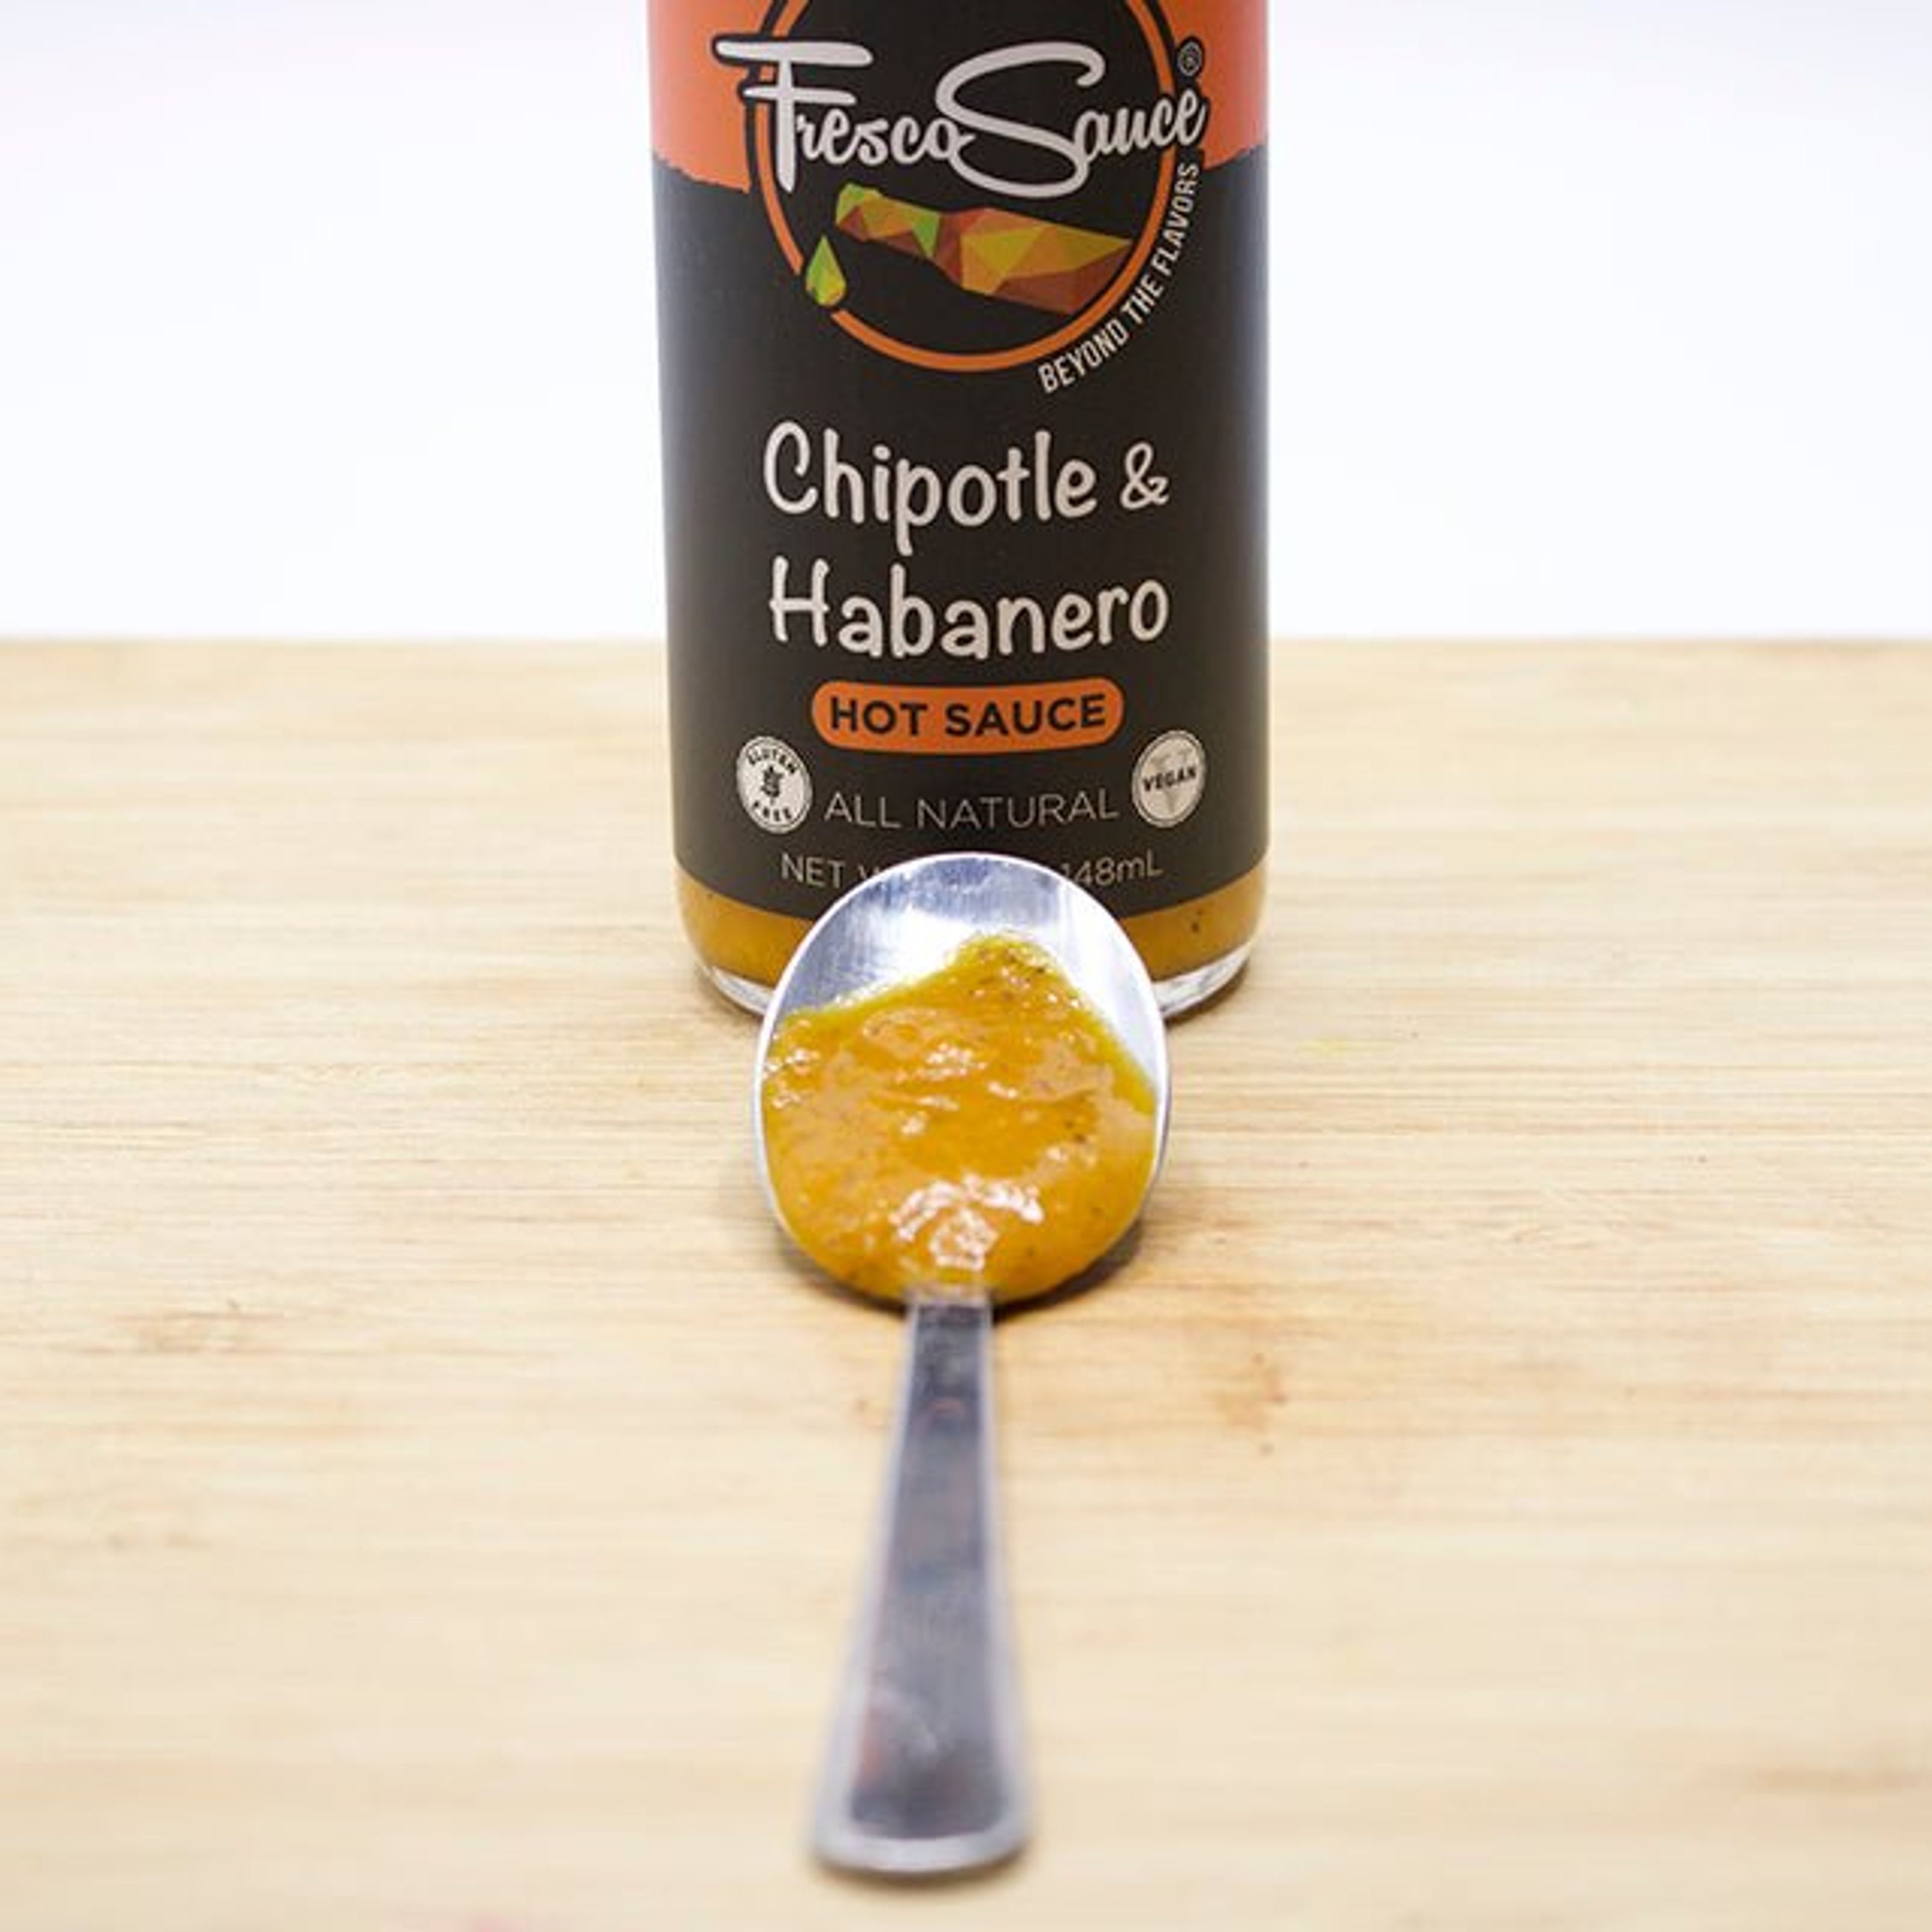 Chipotle & Habanero Hot Sauce